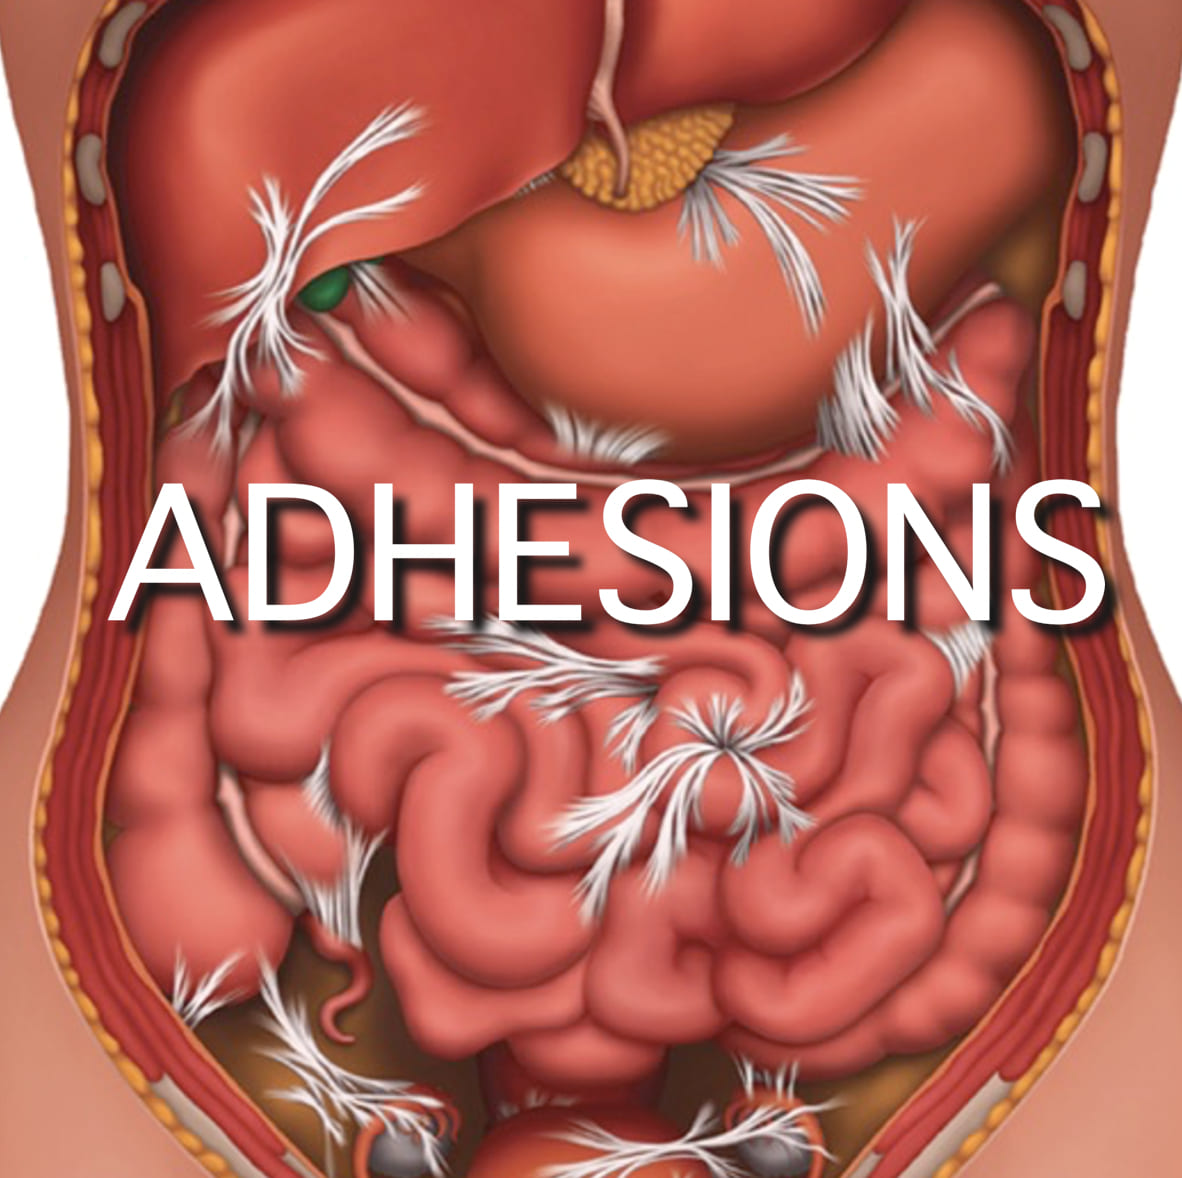 Abdominal Adhesions